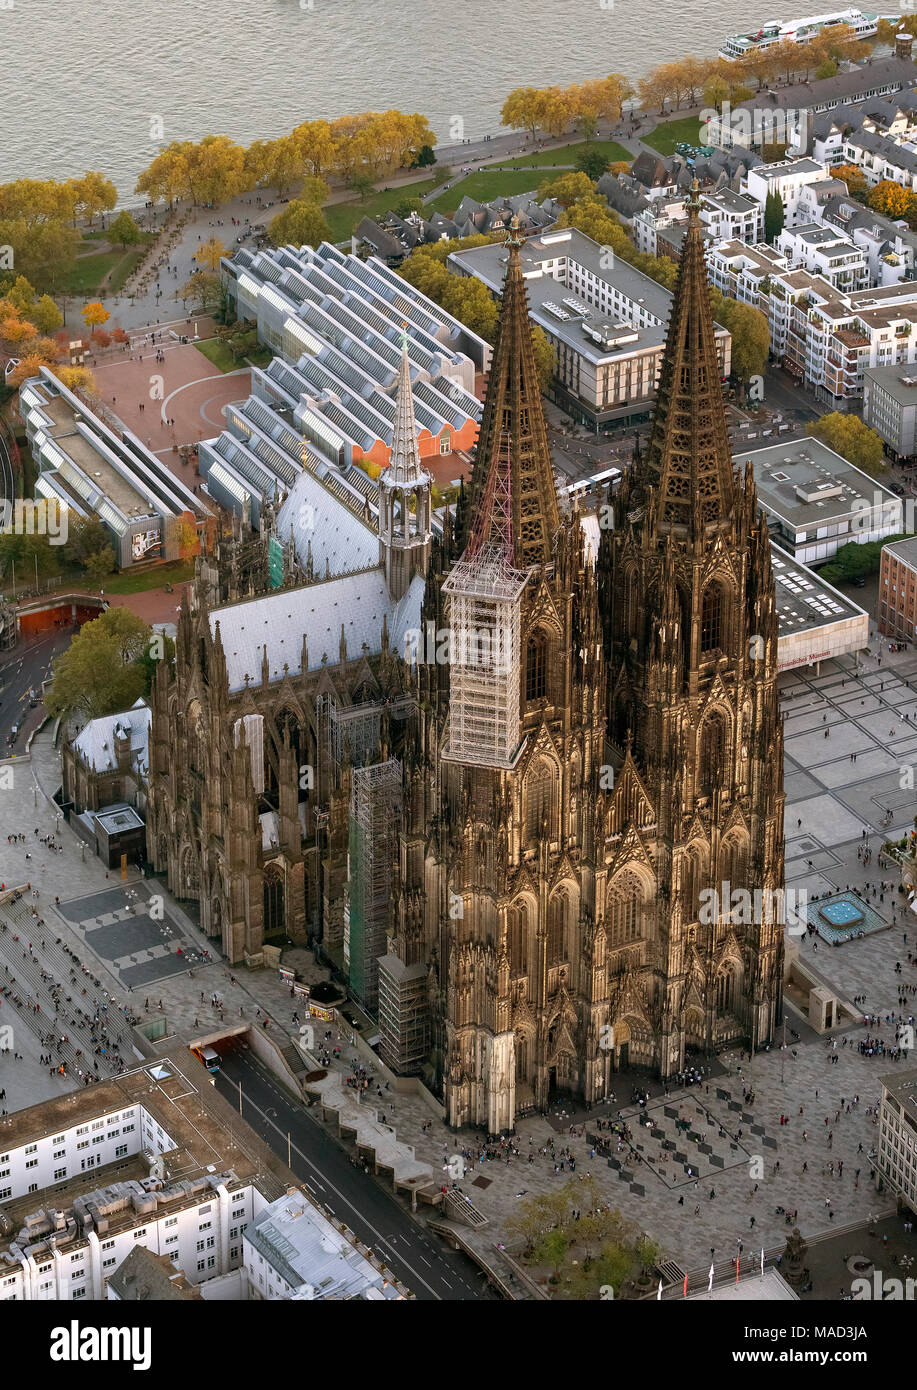 Vista aérea, la catedral de Colonia, la Catedral de San Pedro, Sitio del Patrimonio Mundial de la UNESCO, la Catedral de la archidiócesis de Colonia, el Domplatte, Gótico, Neugoth Foto de stock